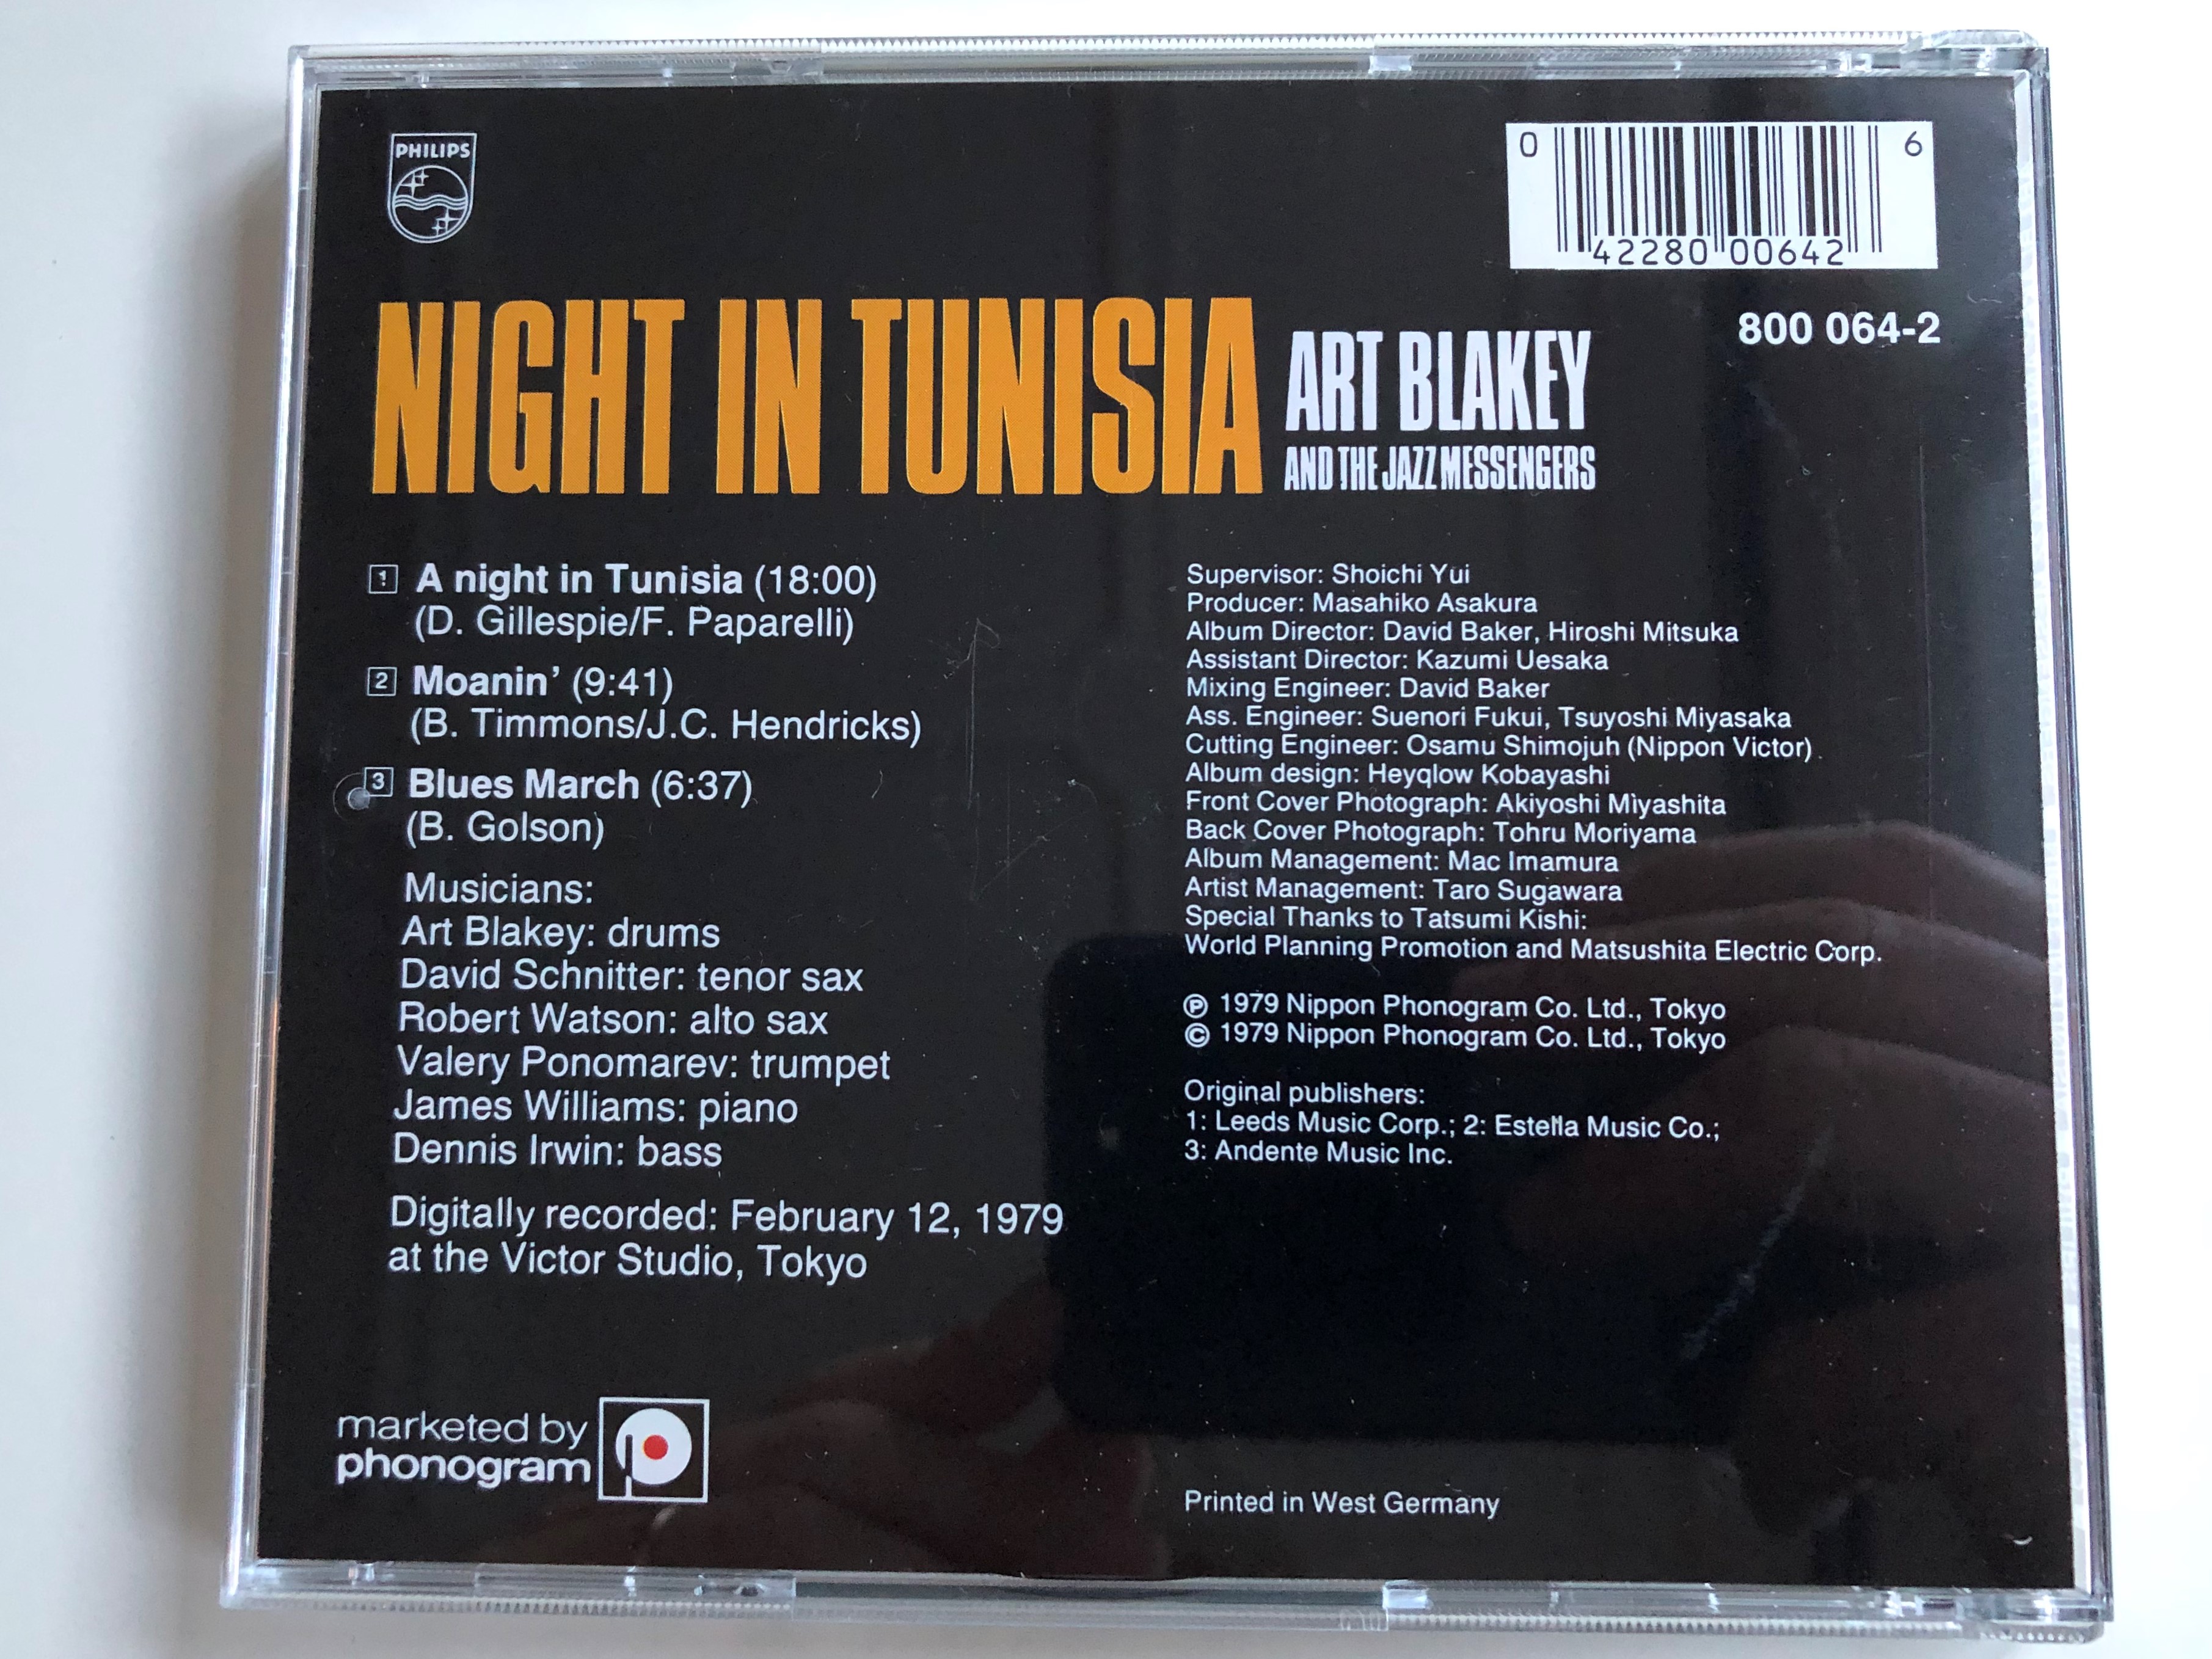 night-in-tunisia-art-blakey-the-jazz-messengers-philips-audio-cd-1979-800-064-2-5-.jpg